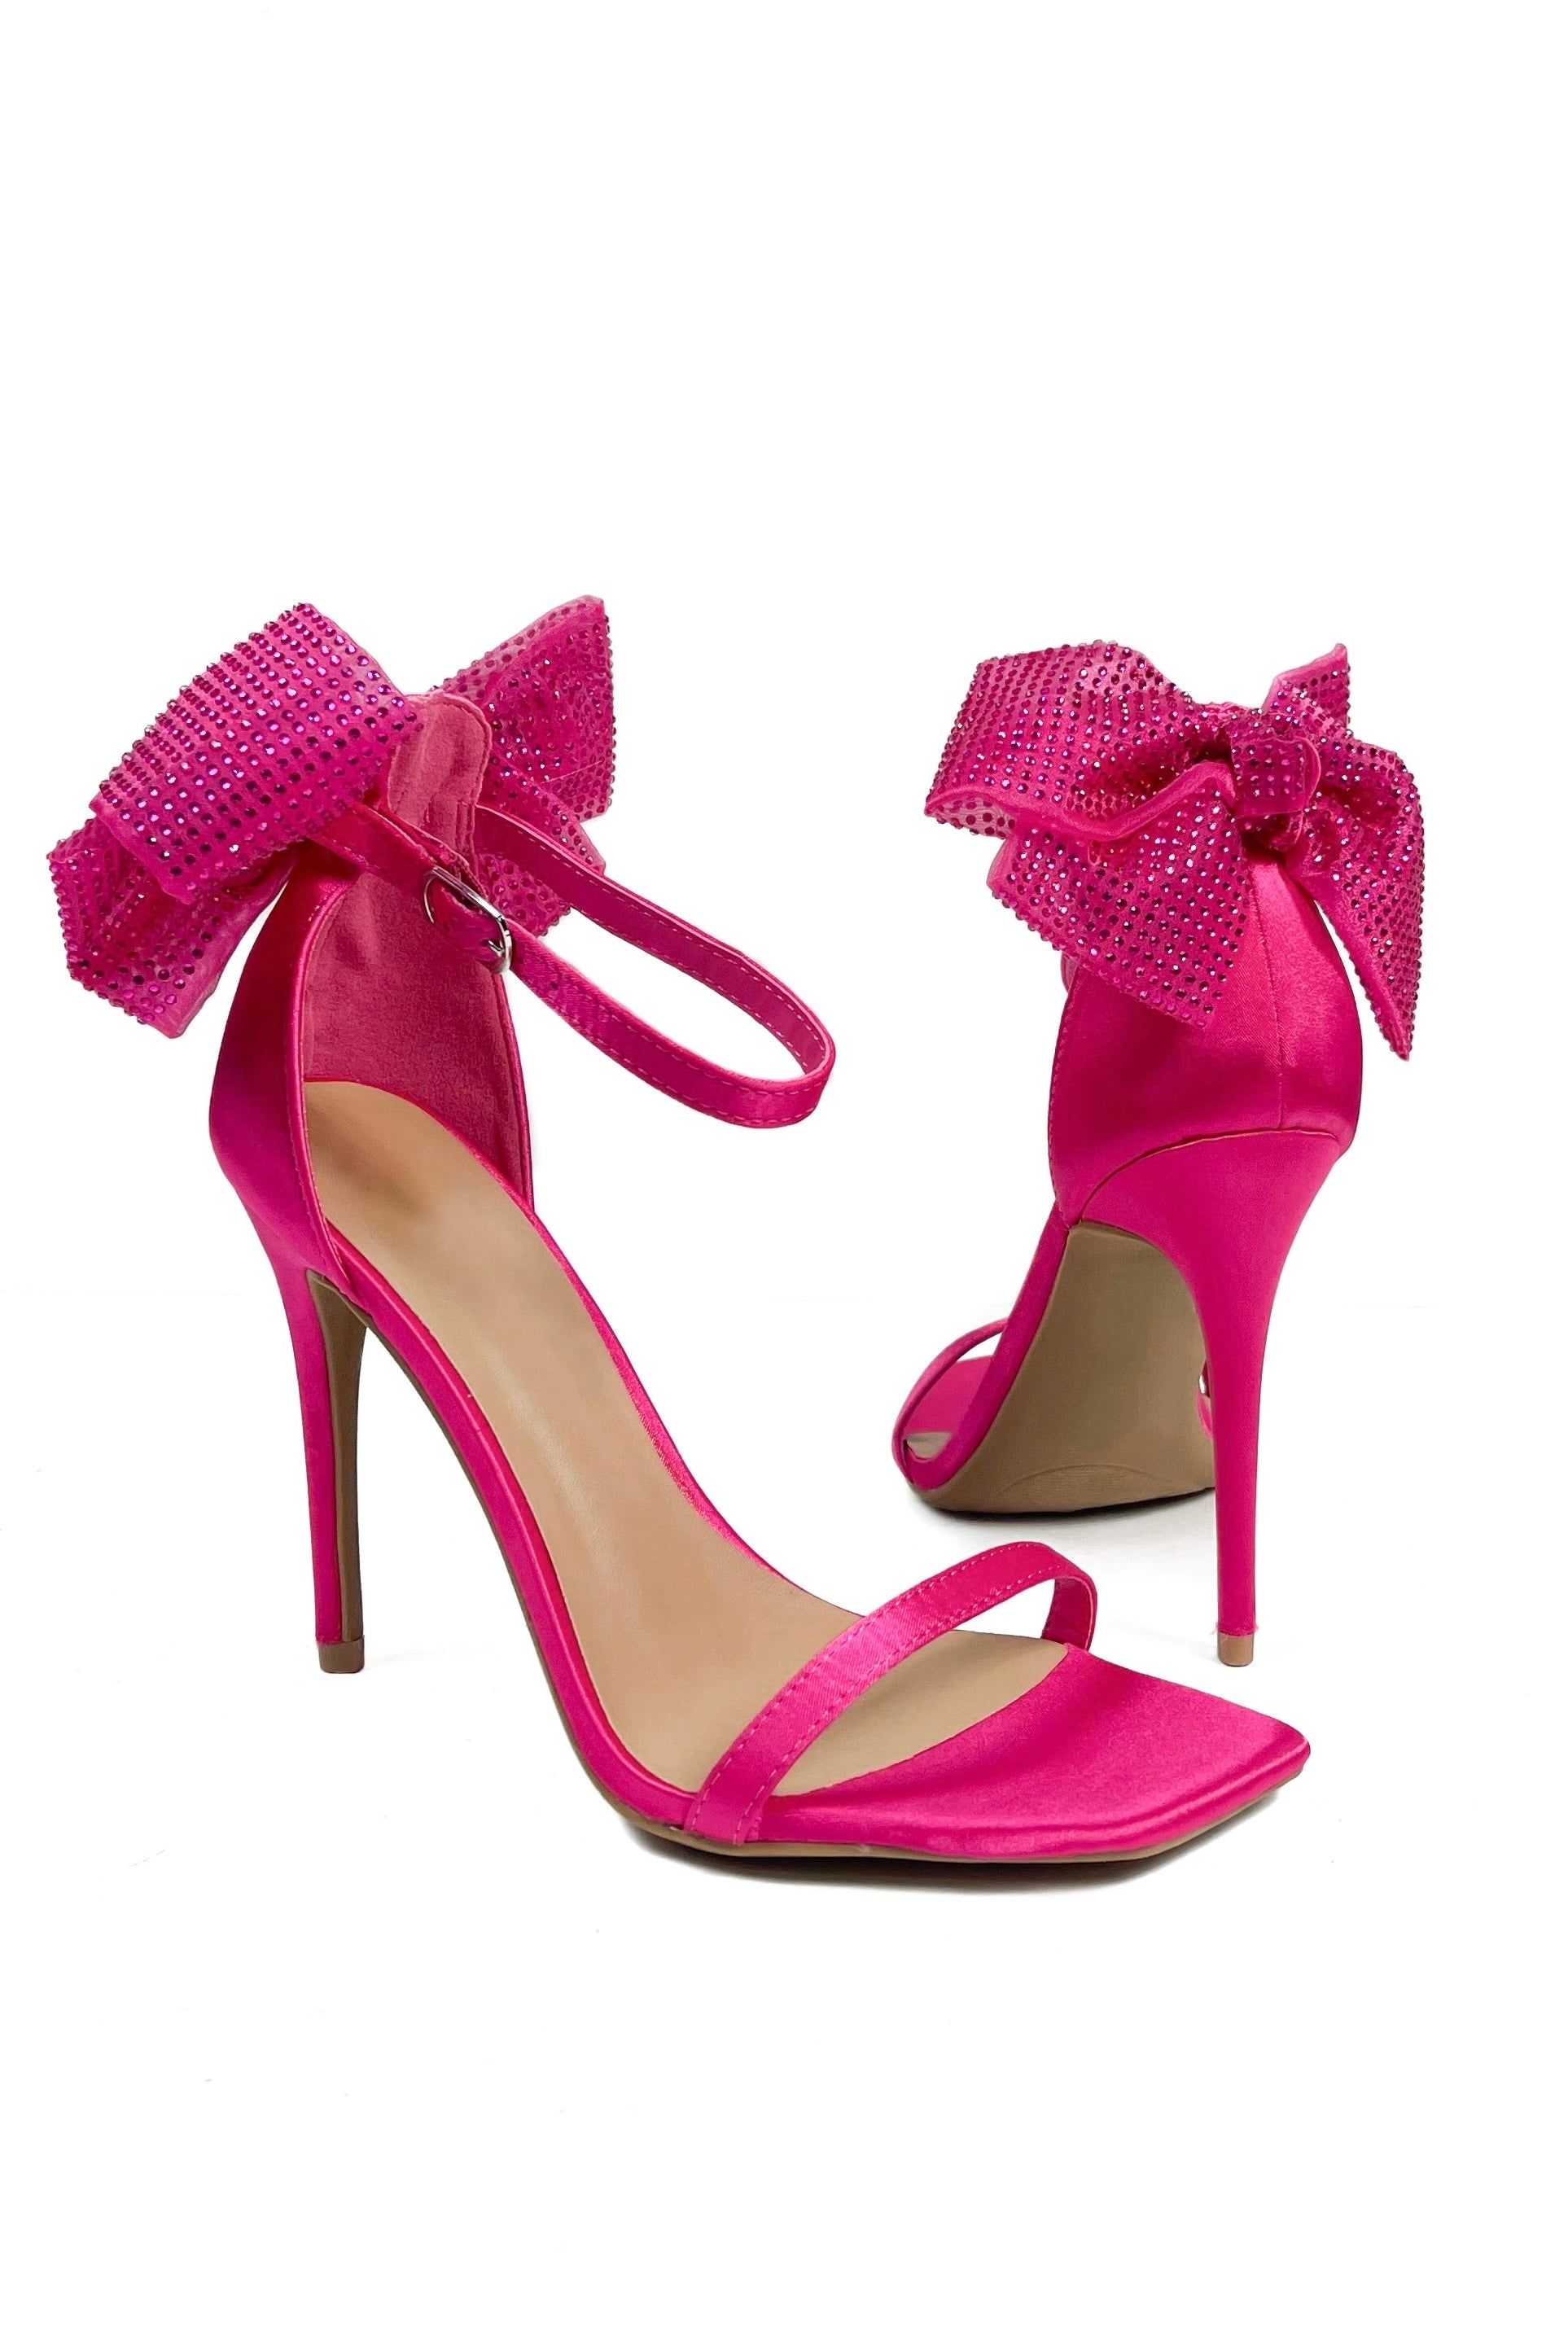 Hot Pink Suede Stiletto Heels | Linzi | SilkFred